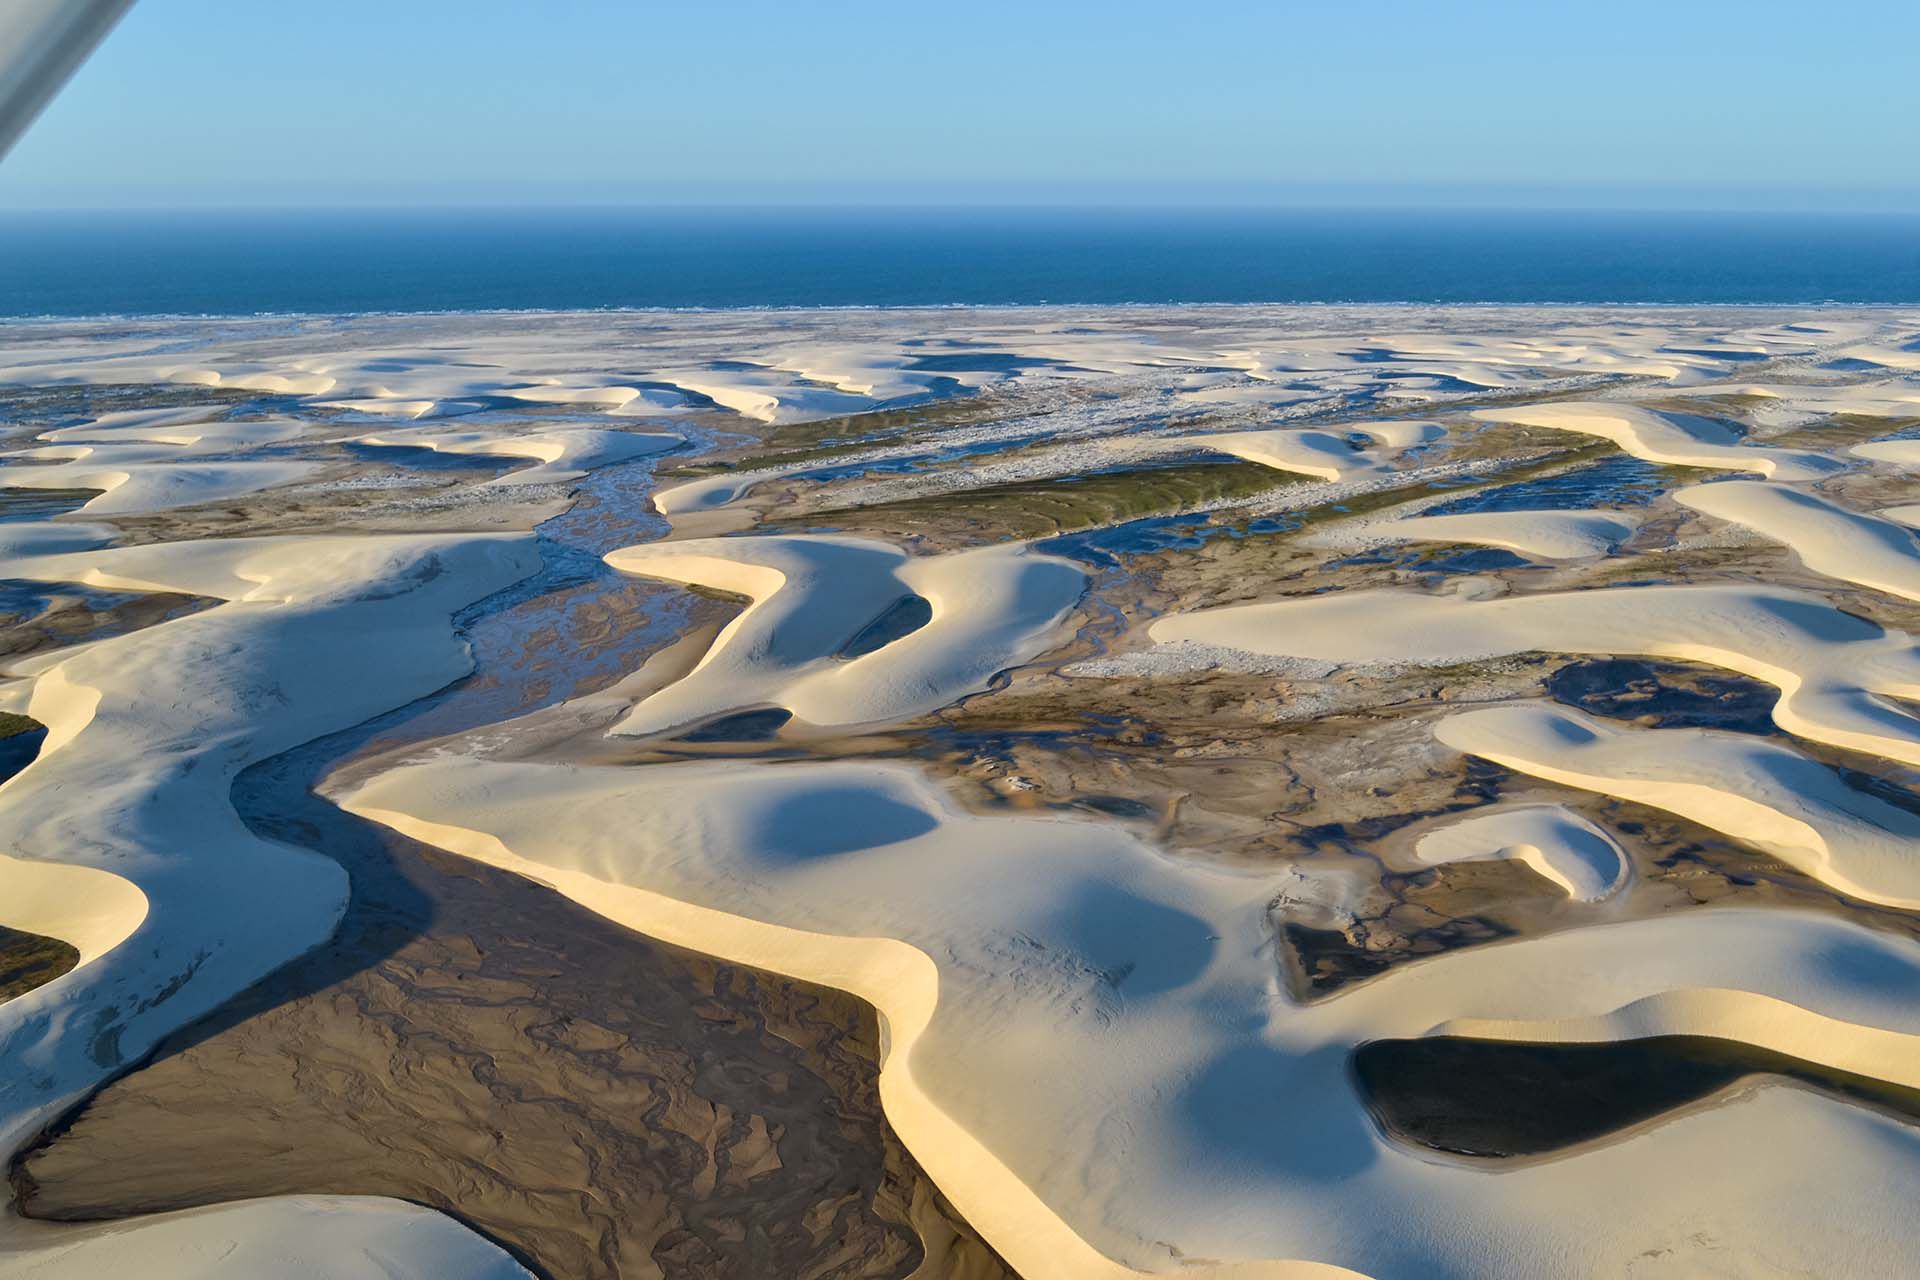 Extendiendo 70 km de la costa del Atlántico norte de Brasil y sobresaliendo 50 km hacia el interior, su nombre significa "sábanas" en portugués. La extensión del paisaje desértico barrido en ondulantes dunas de arena hace que los lagos de agua de lluvia se acumulen en sus huecos en ciertas épocas del año